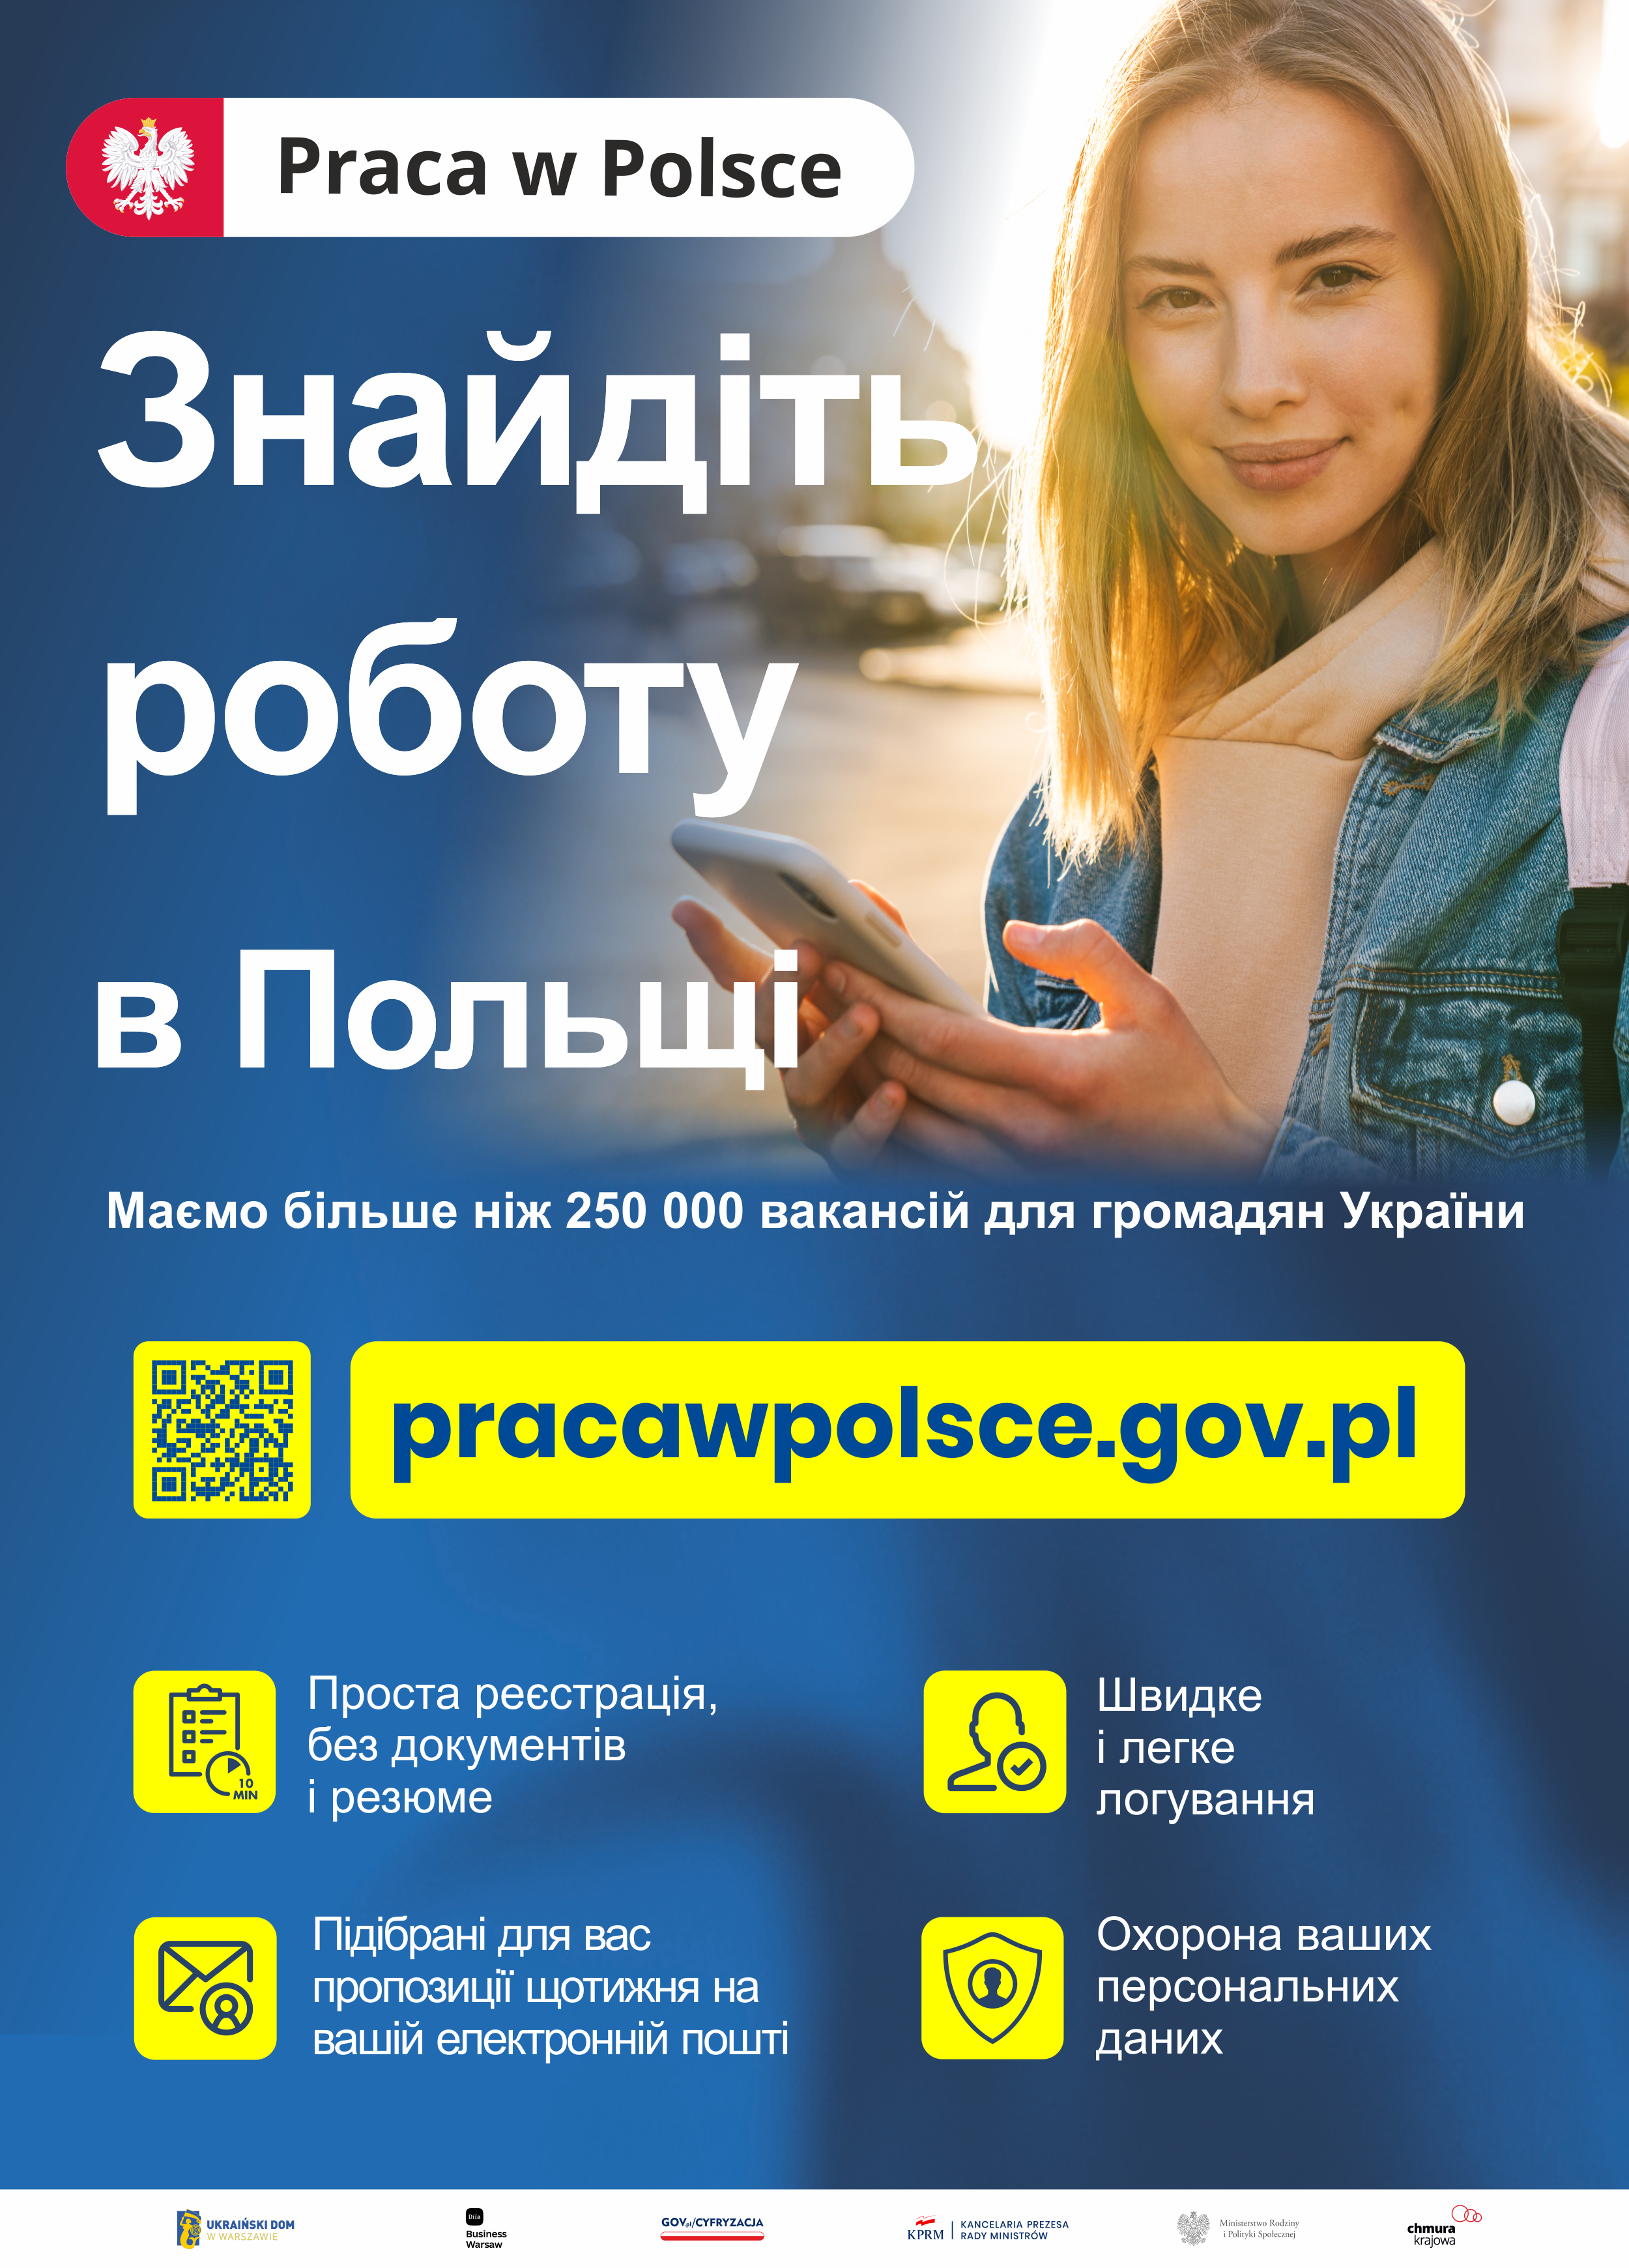 Plakat serwisu: pracawpolsce.gov.pl, który umożliwia obywatelom Ukrainy tworzenie profili zawodowych (CV) oraz poszukiwanie pracy z puli ponad 250 tys. ofert pracy, w tym pochodzących z Centralnej Bazy Ofert Pracy (CBOP)